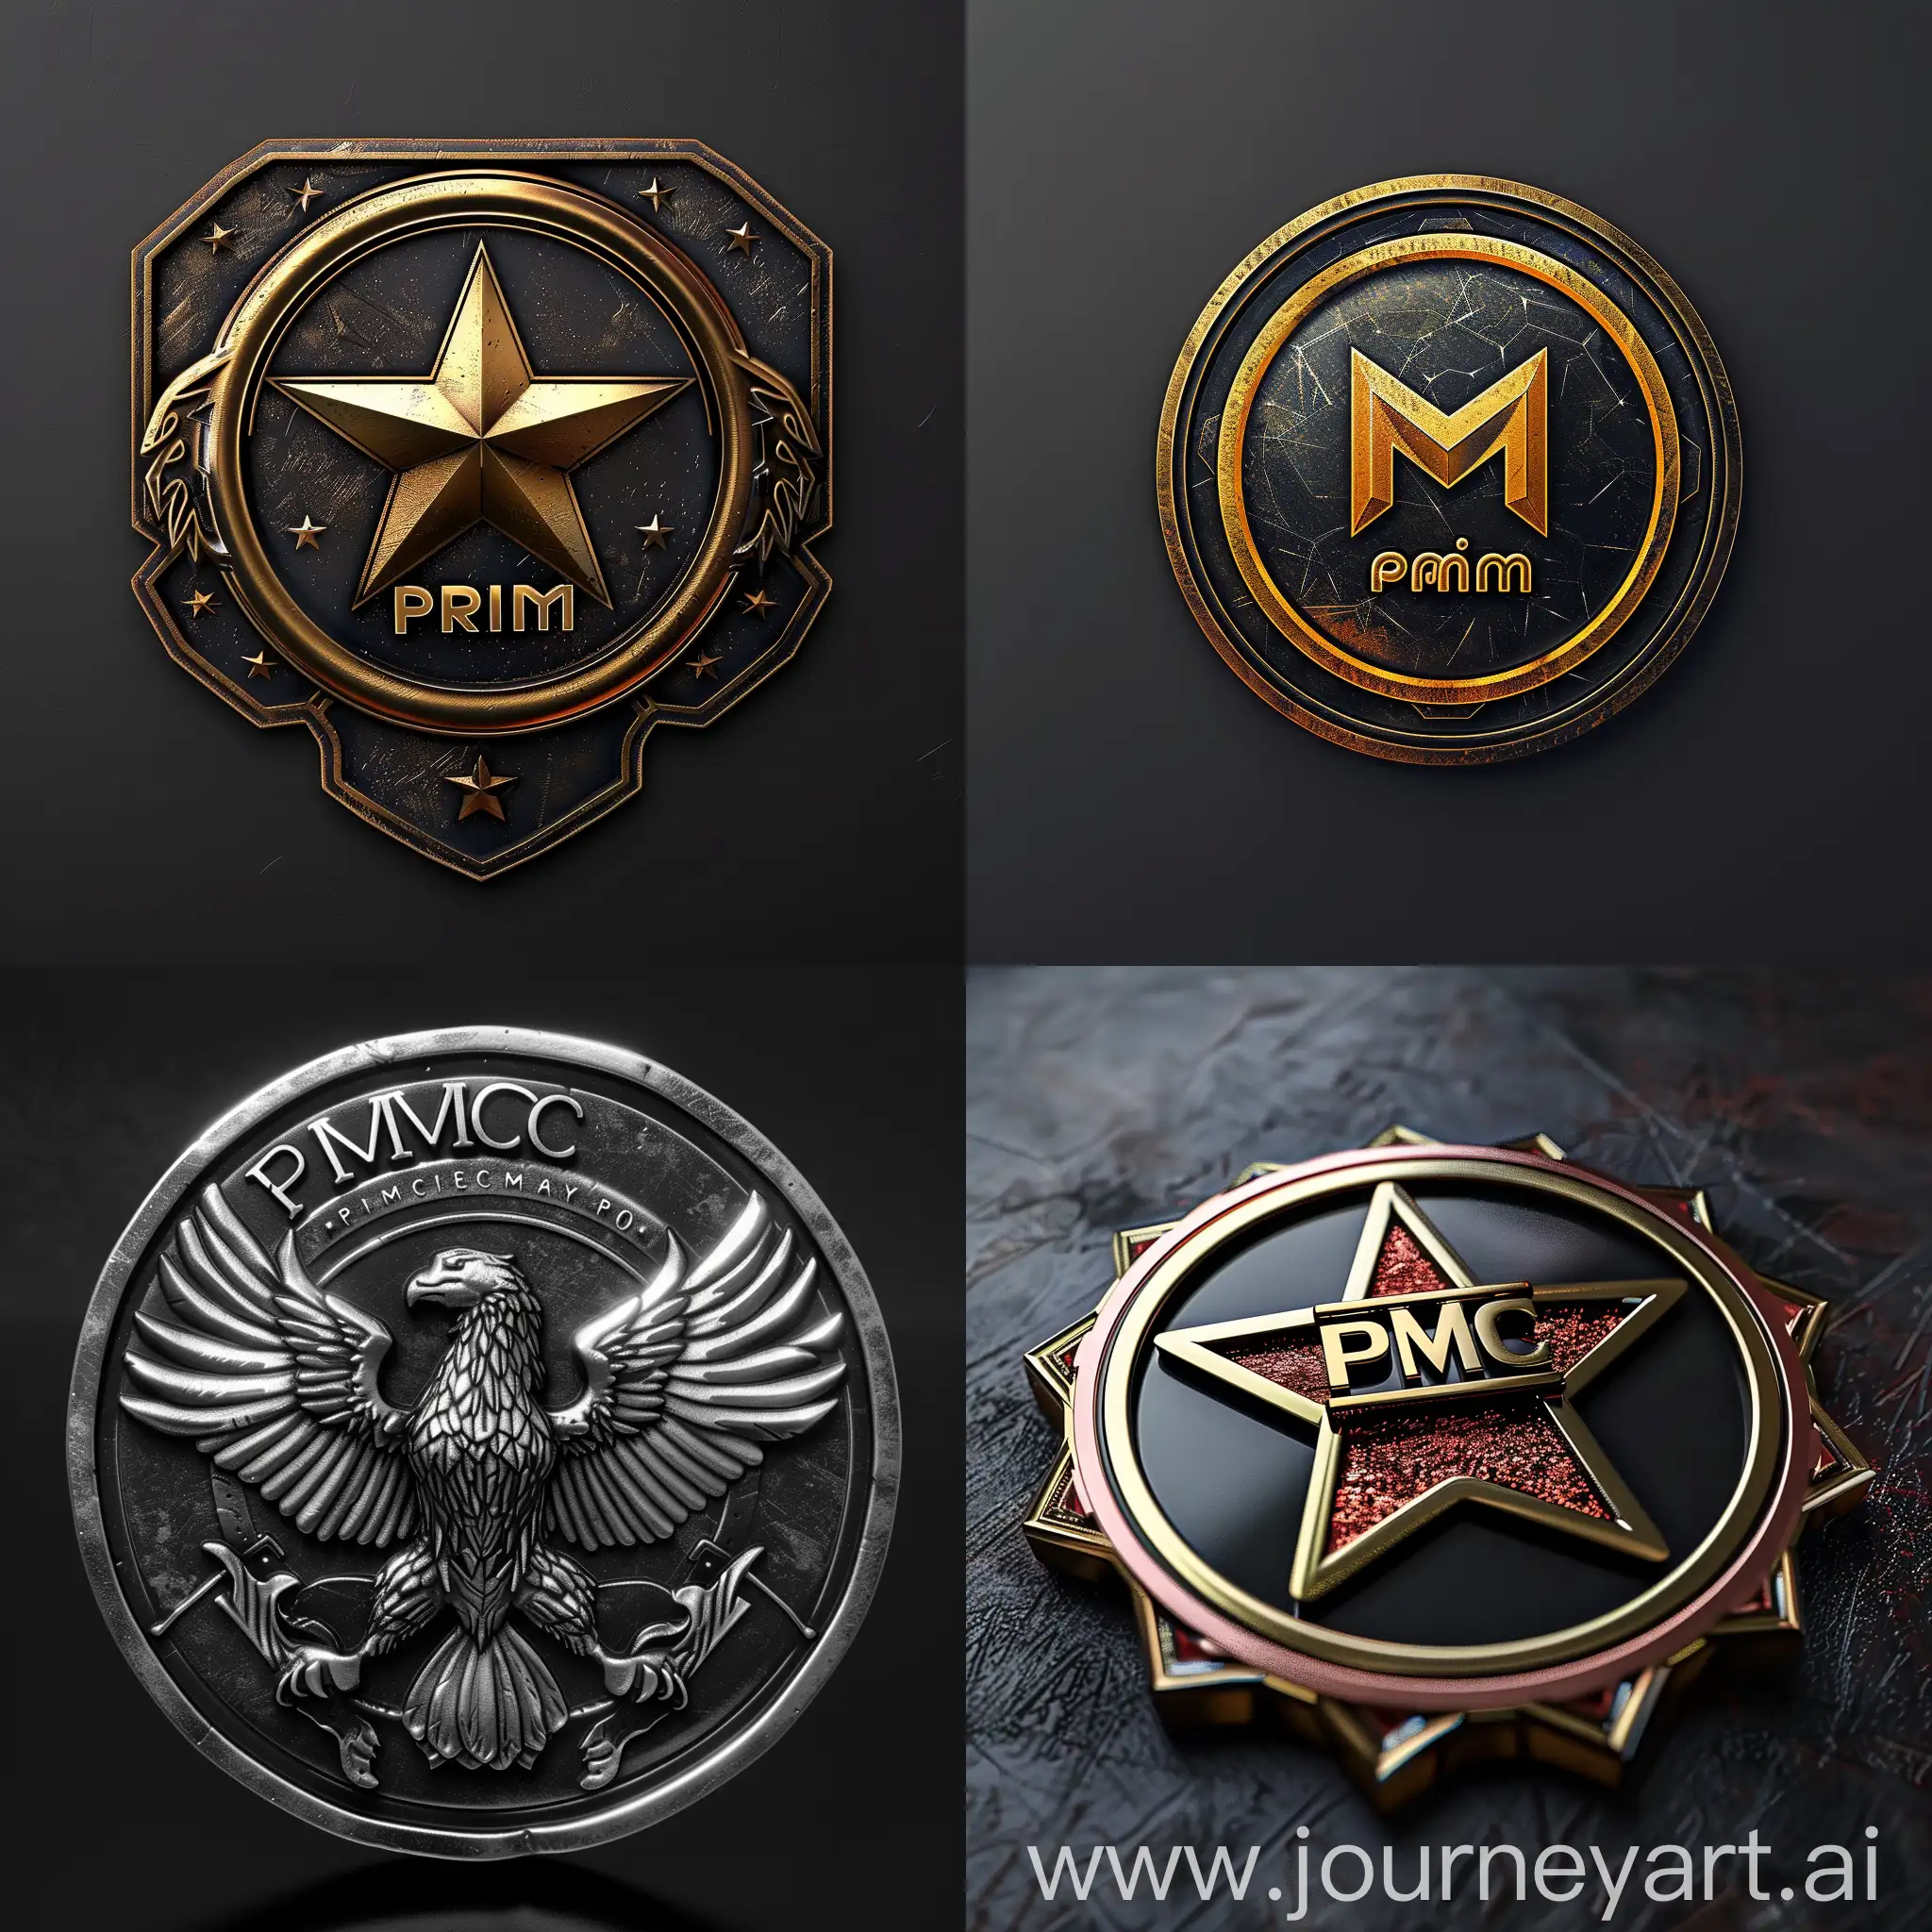 PMC-Prim-Emblem-Custom-Military-Insignia-with-V6-Design